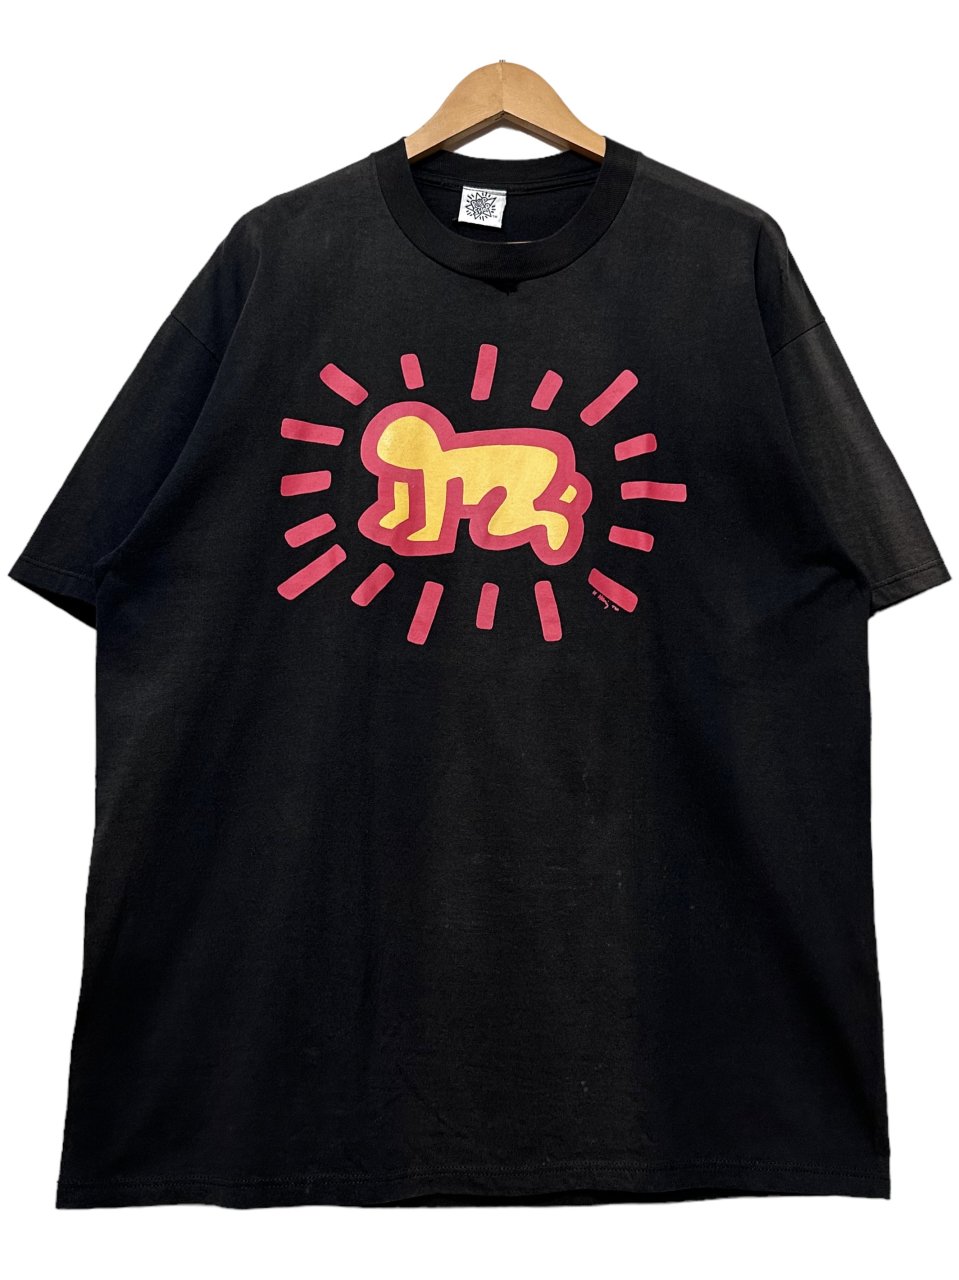 USA製 90s~00s Keith Haring Print S/S Tee 黒 XL キースヘリング 半袖 Tシャツ アーティストT アートT  ブラック 古着 - NEWJOKE ONLINE STORE